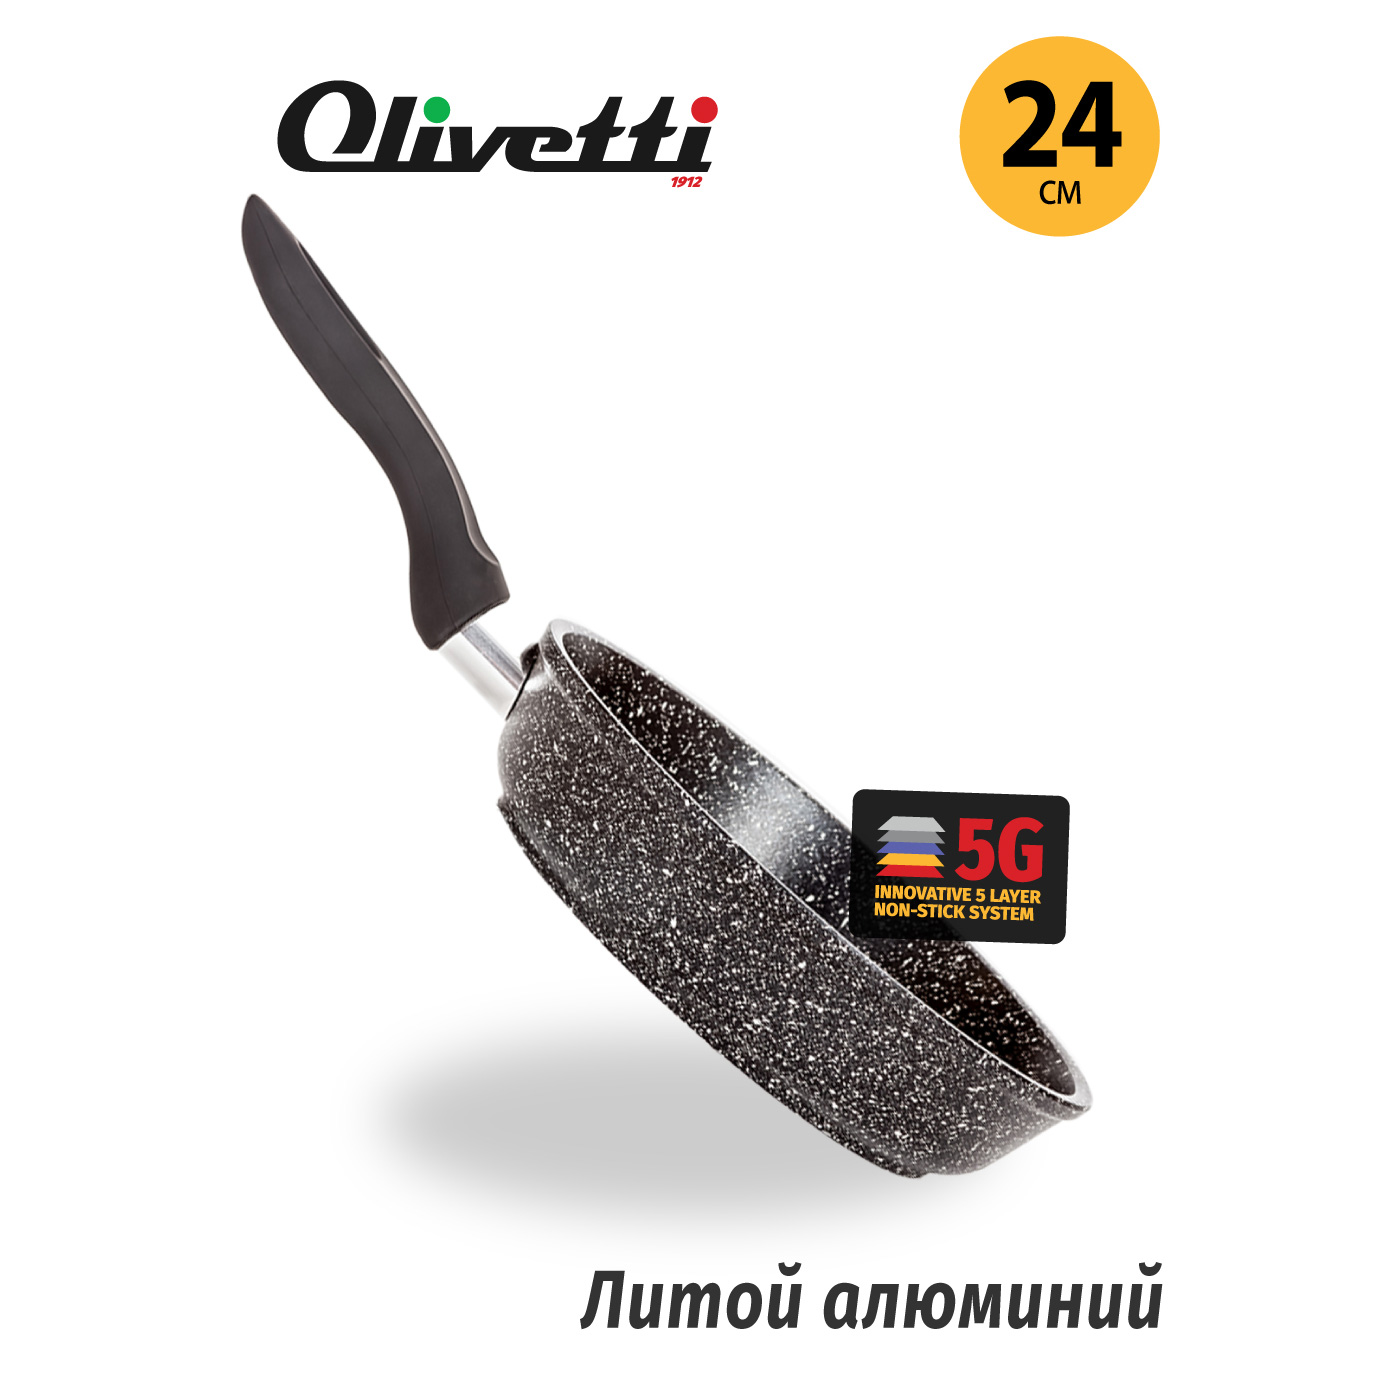 Картинка Сковорода Olivetti FP724 (24 см) по разумной цене купить в интернет магазине mall.su